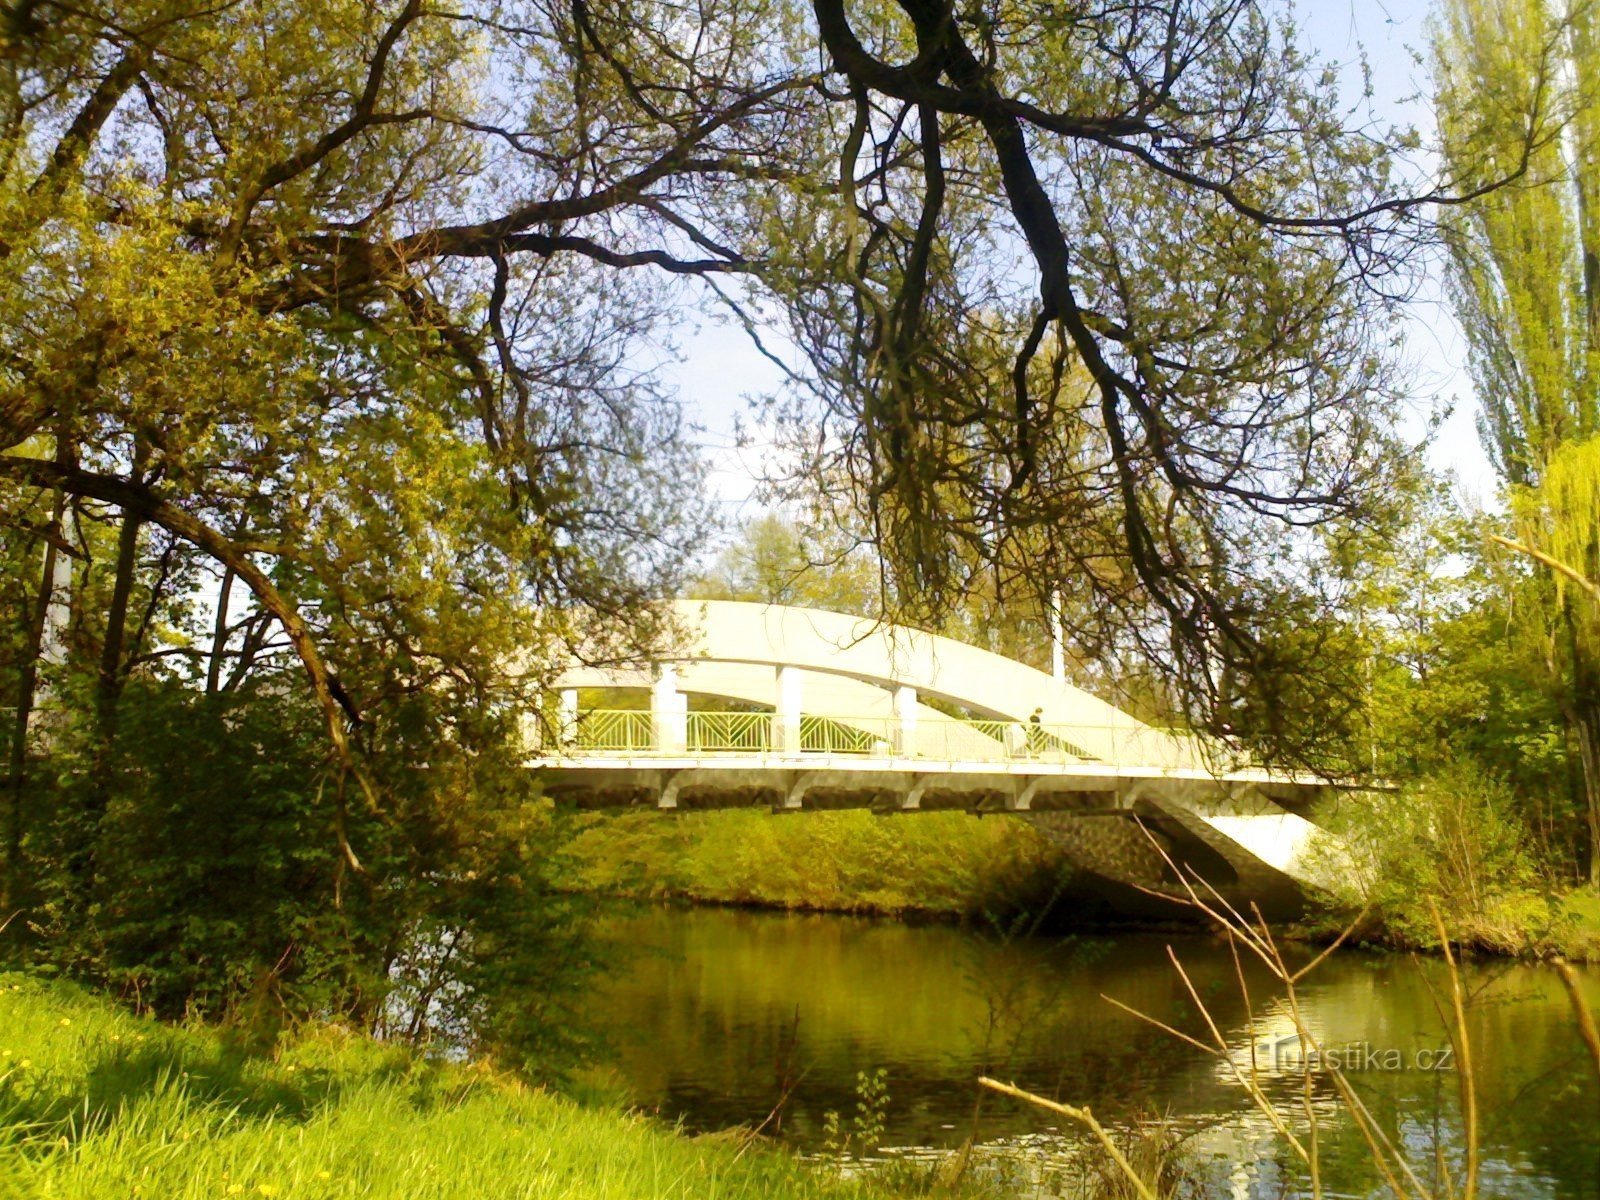 Malšovice-brug over Orlica